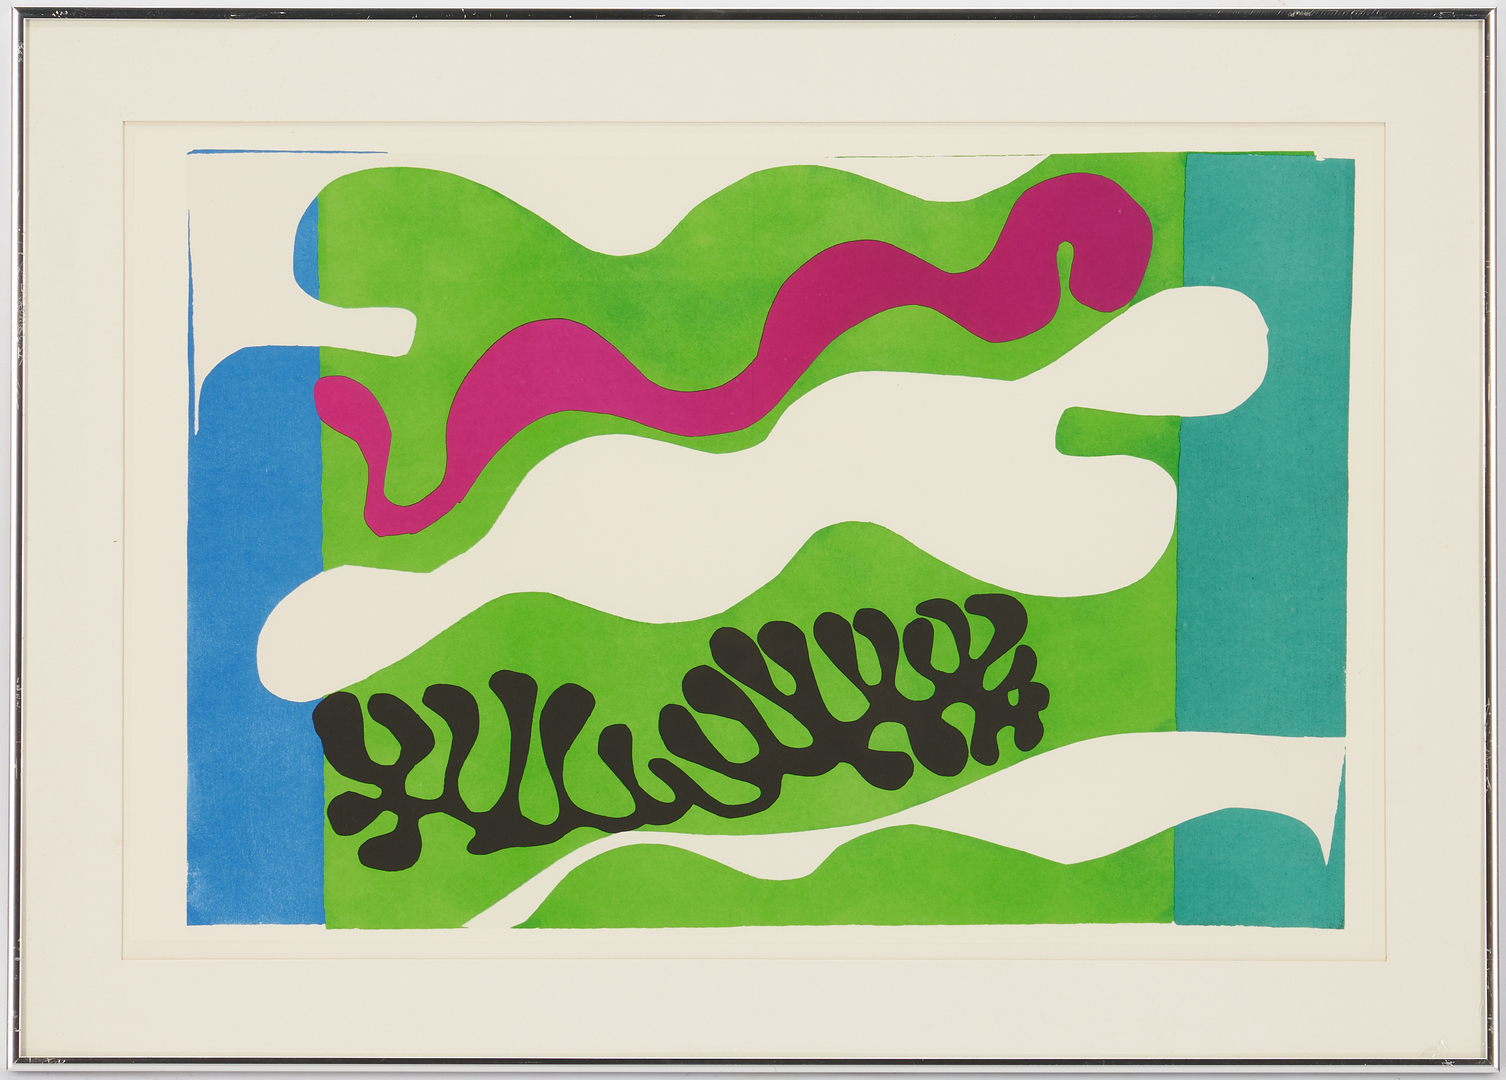 Lot 559: Matisse "Jazz" Series Portfolio, 20 framed color plates